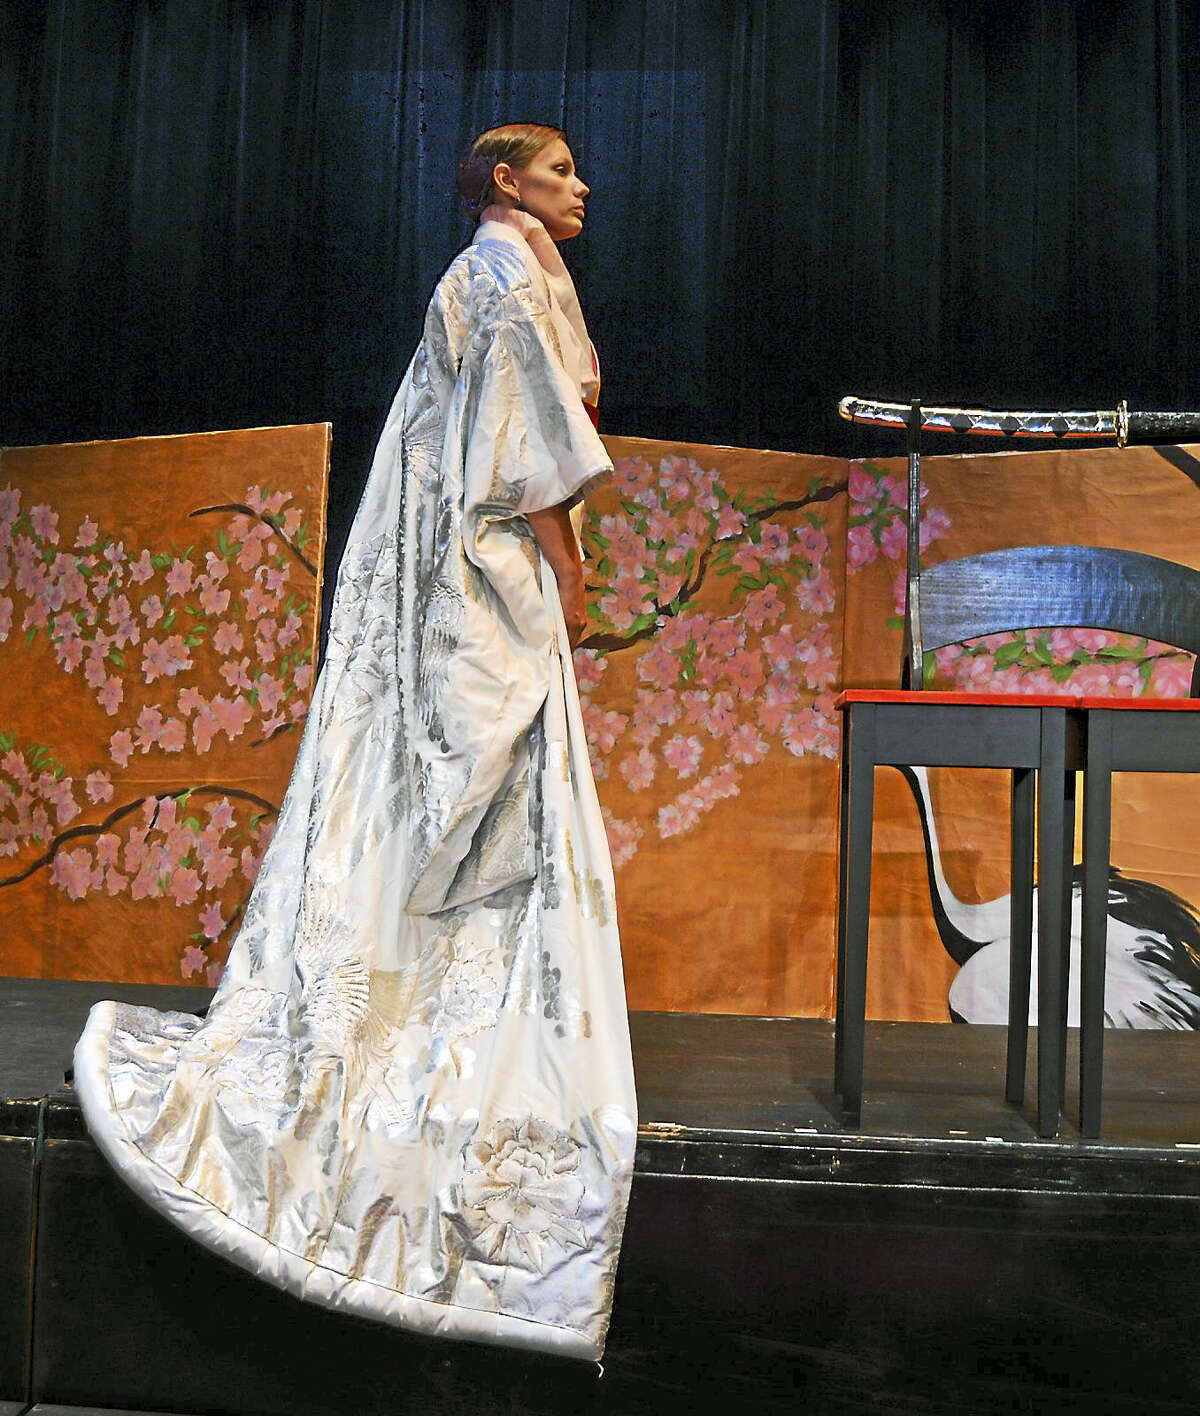 Shannon Kessler Dooley in Butterfly’s wedding robe.